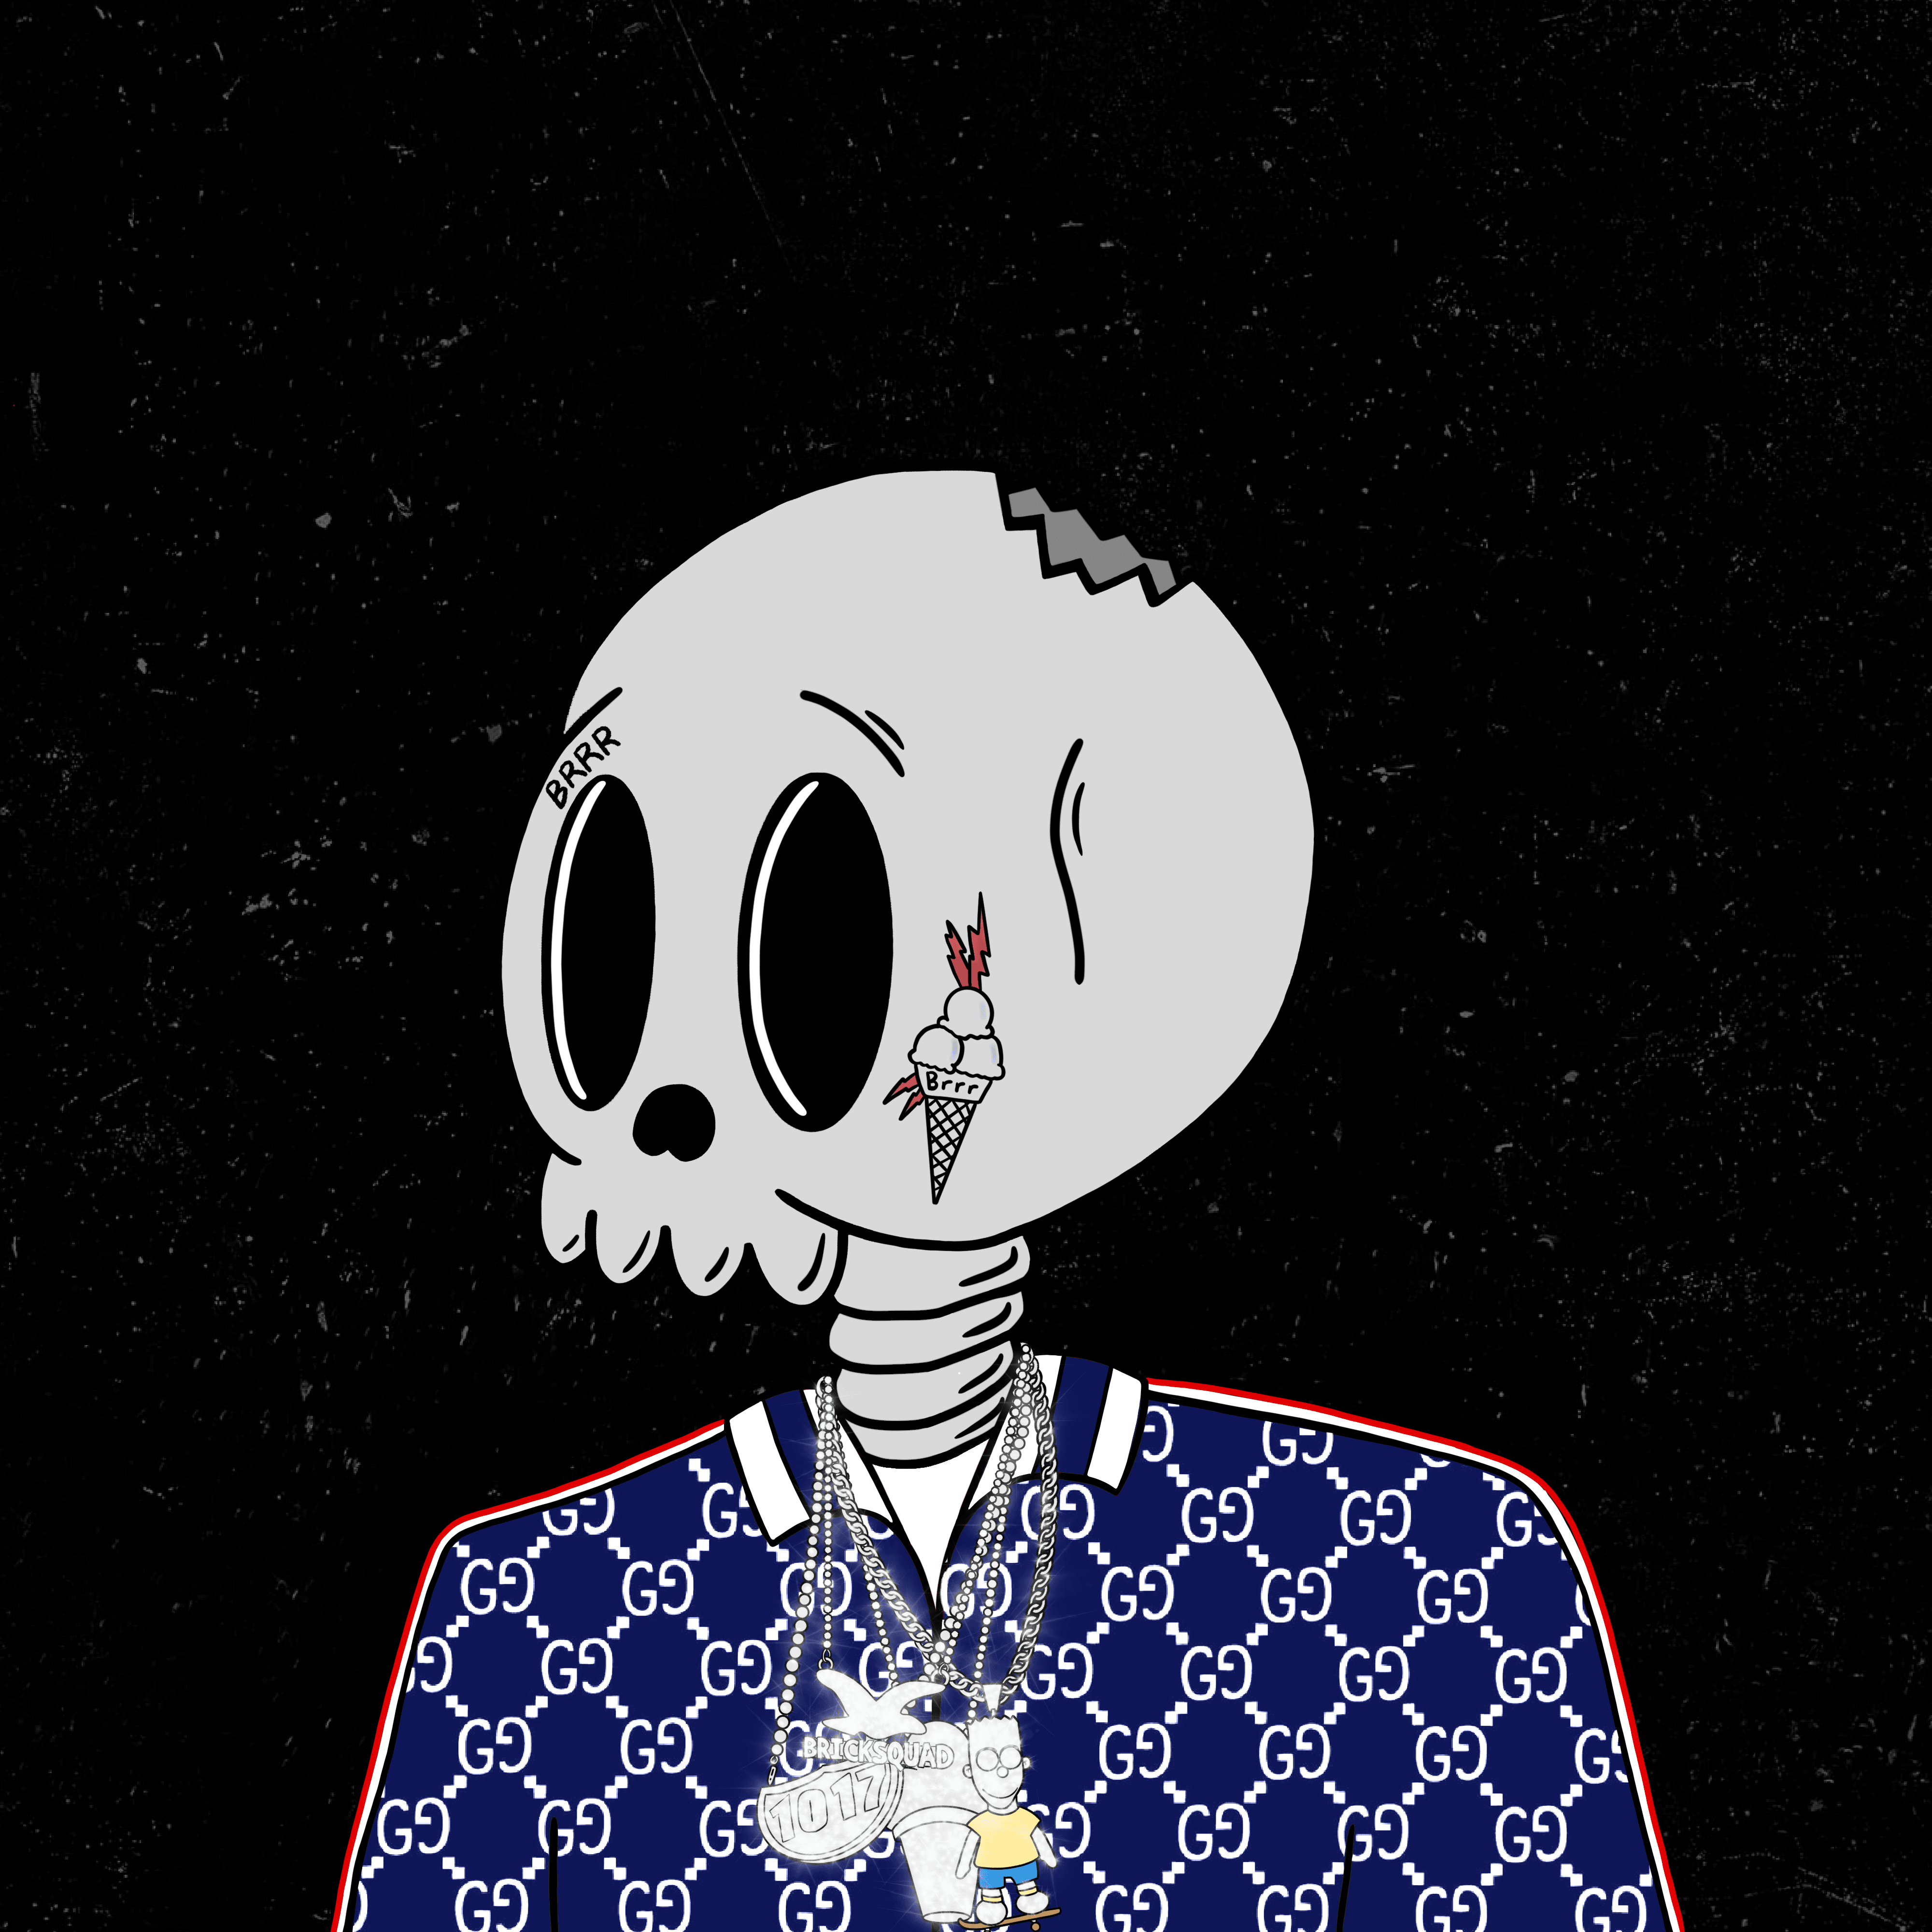 Skeleton 218: BRRR